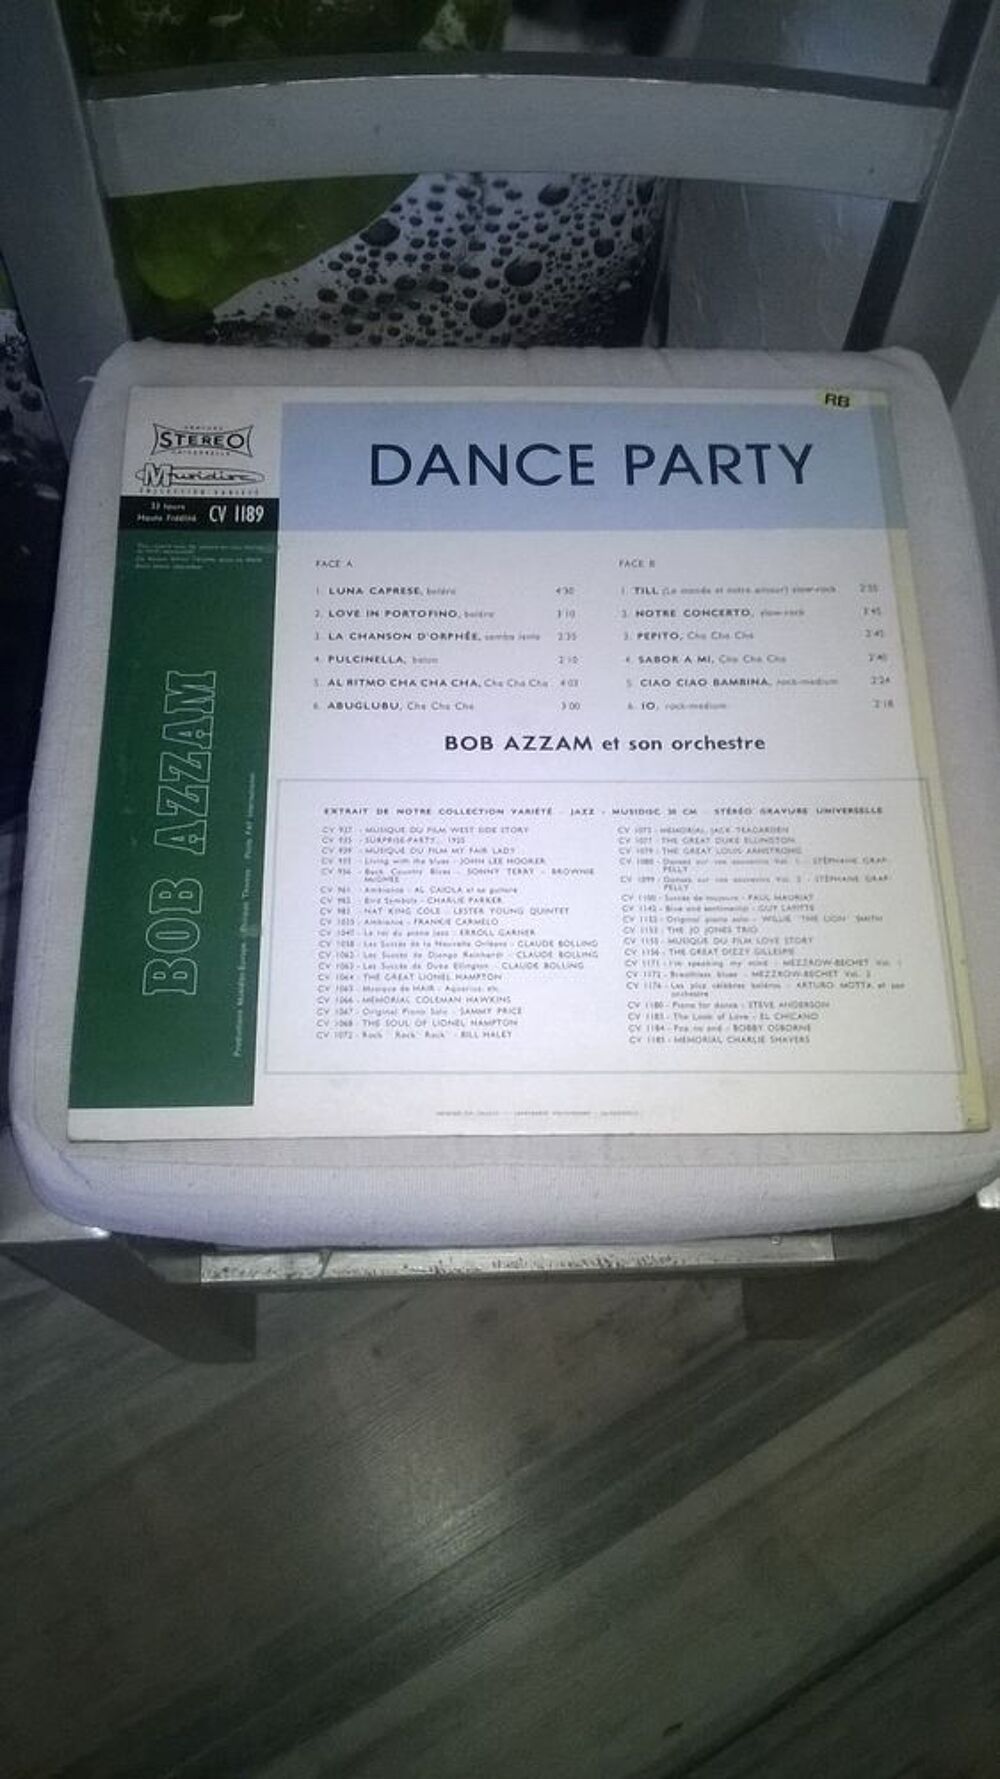 Vinyle Bob Azzam Et Son Orchestre
Dance Party
1971
Excell CD et vinyles